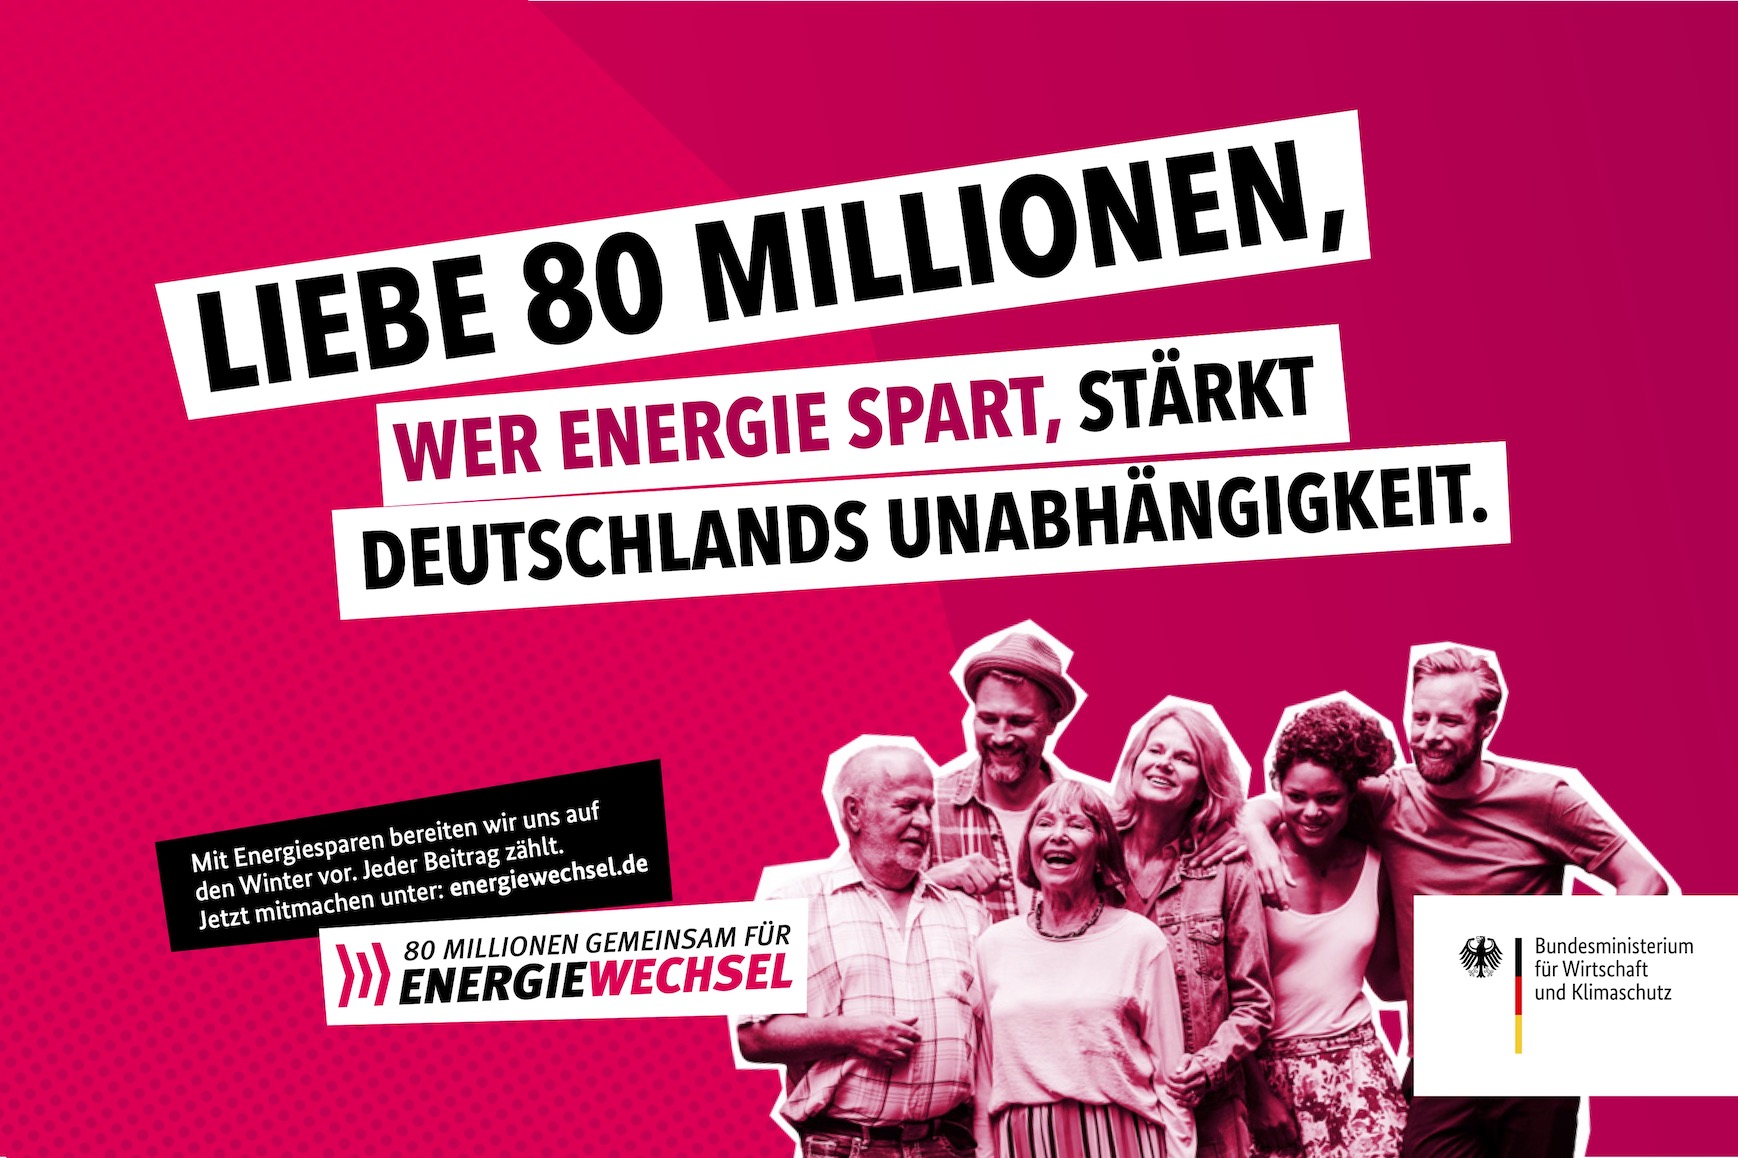 Kampagnenmotiv „Liebe 80 Millionen” | 80 Millionen gemeinsam für Energiewechsel